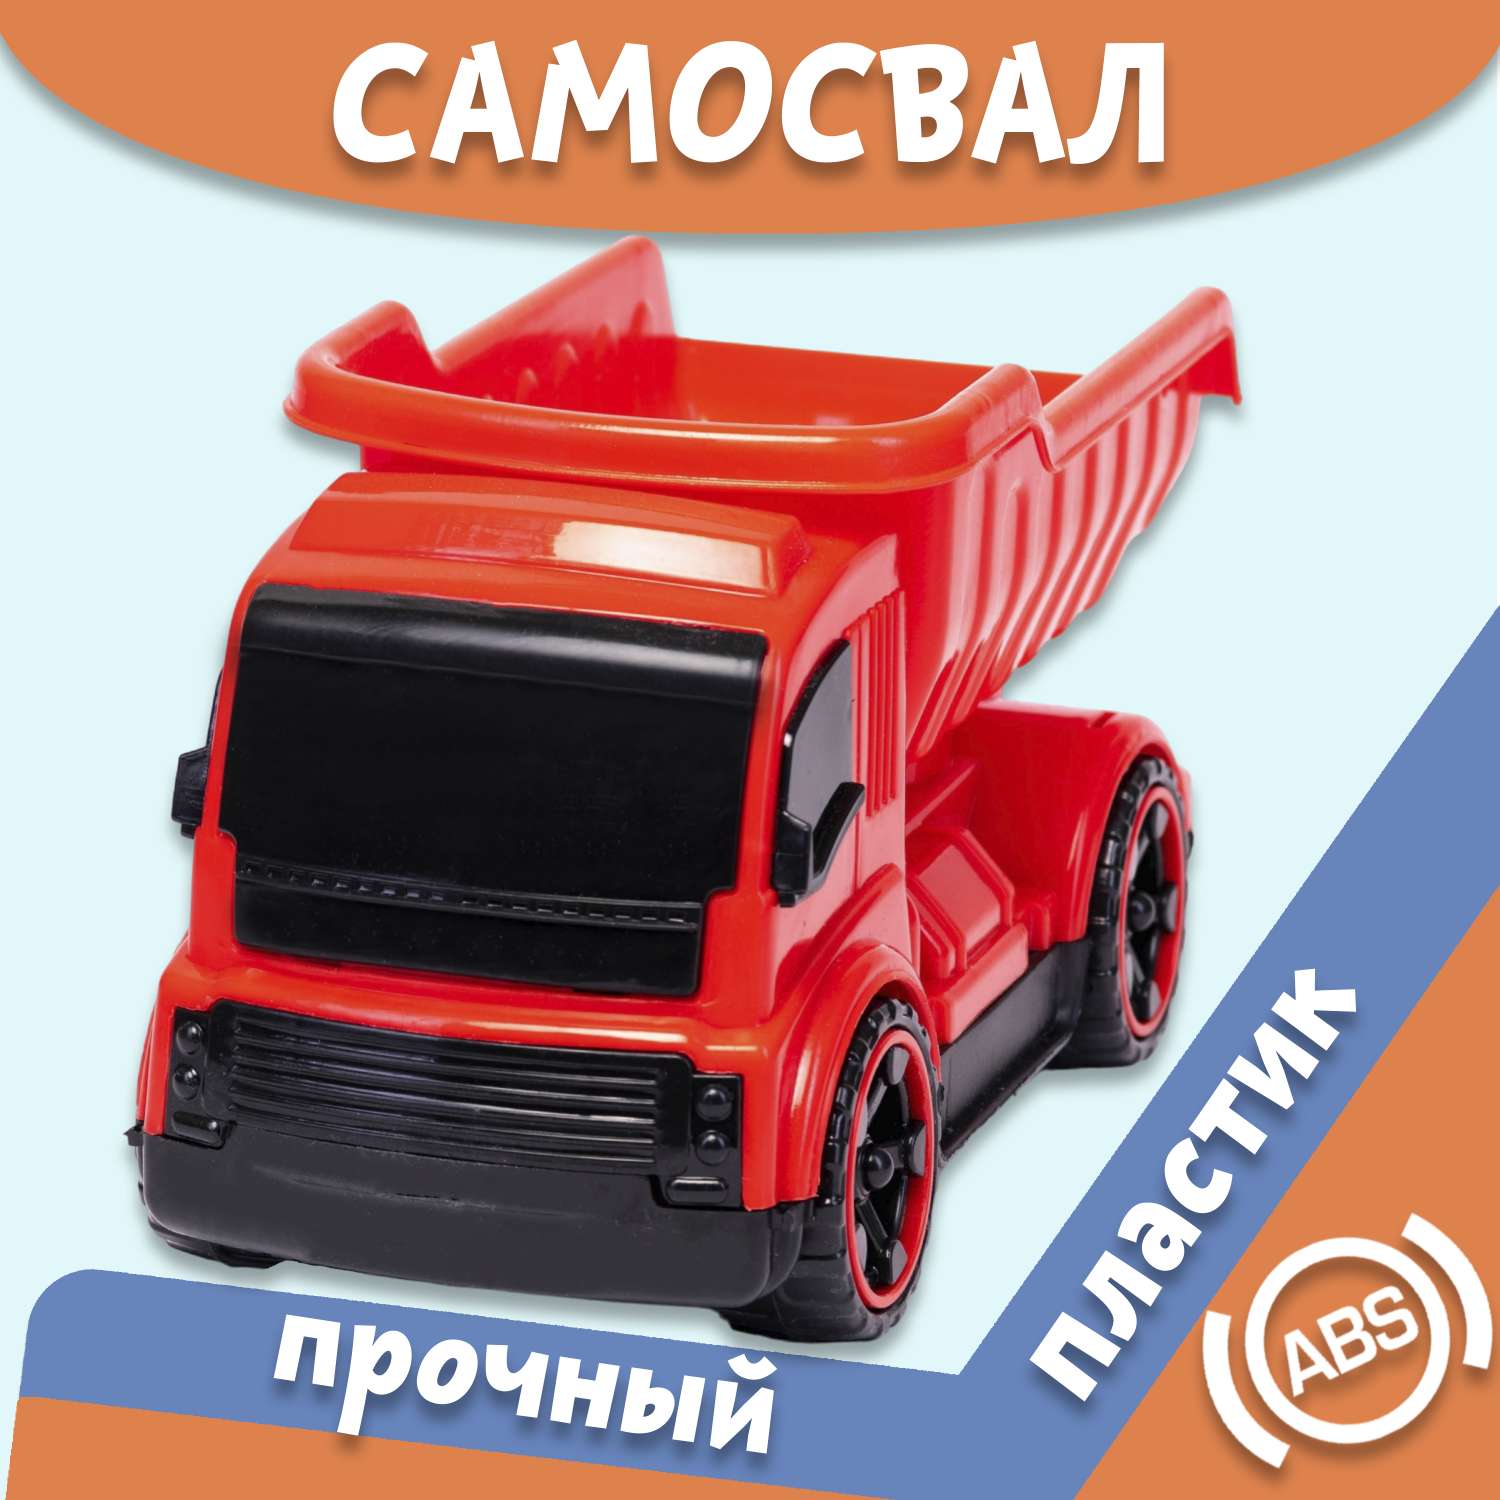 Машинка Нижегородская игрушка Самосвал красный ктг270_кр - фото 2